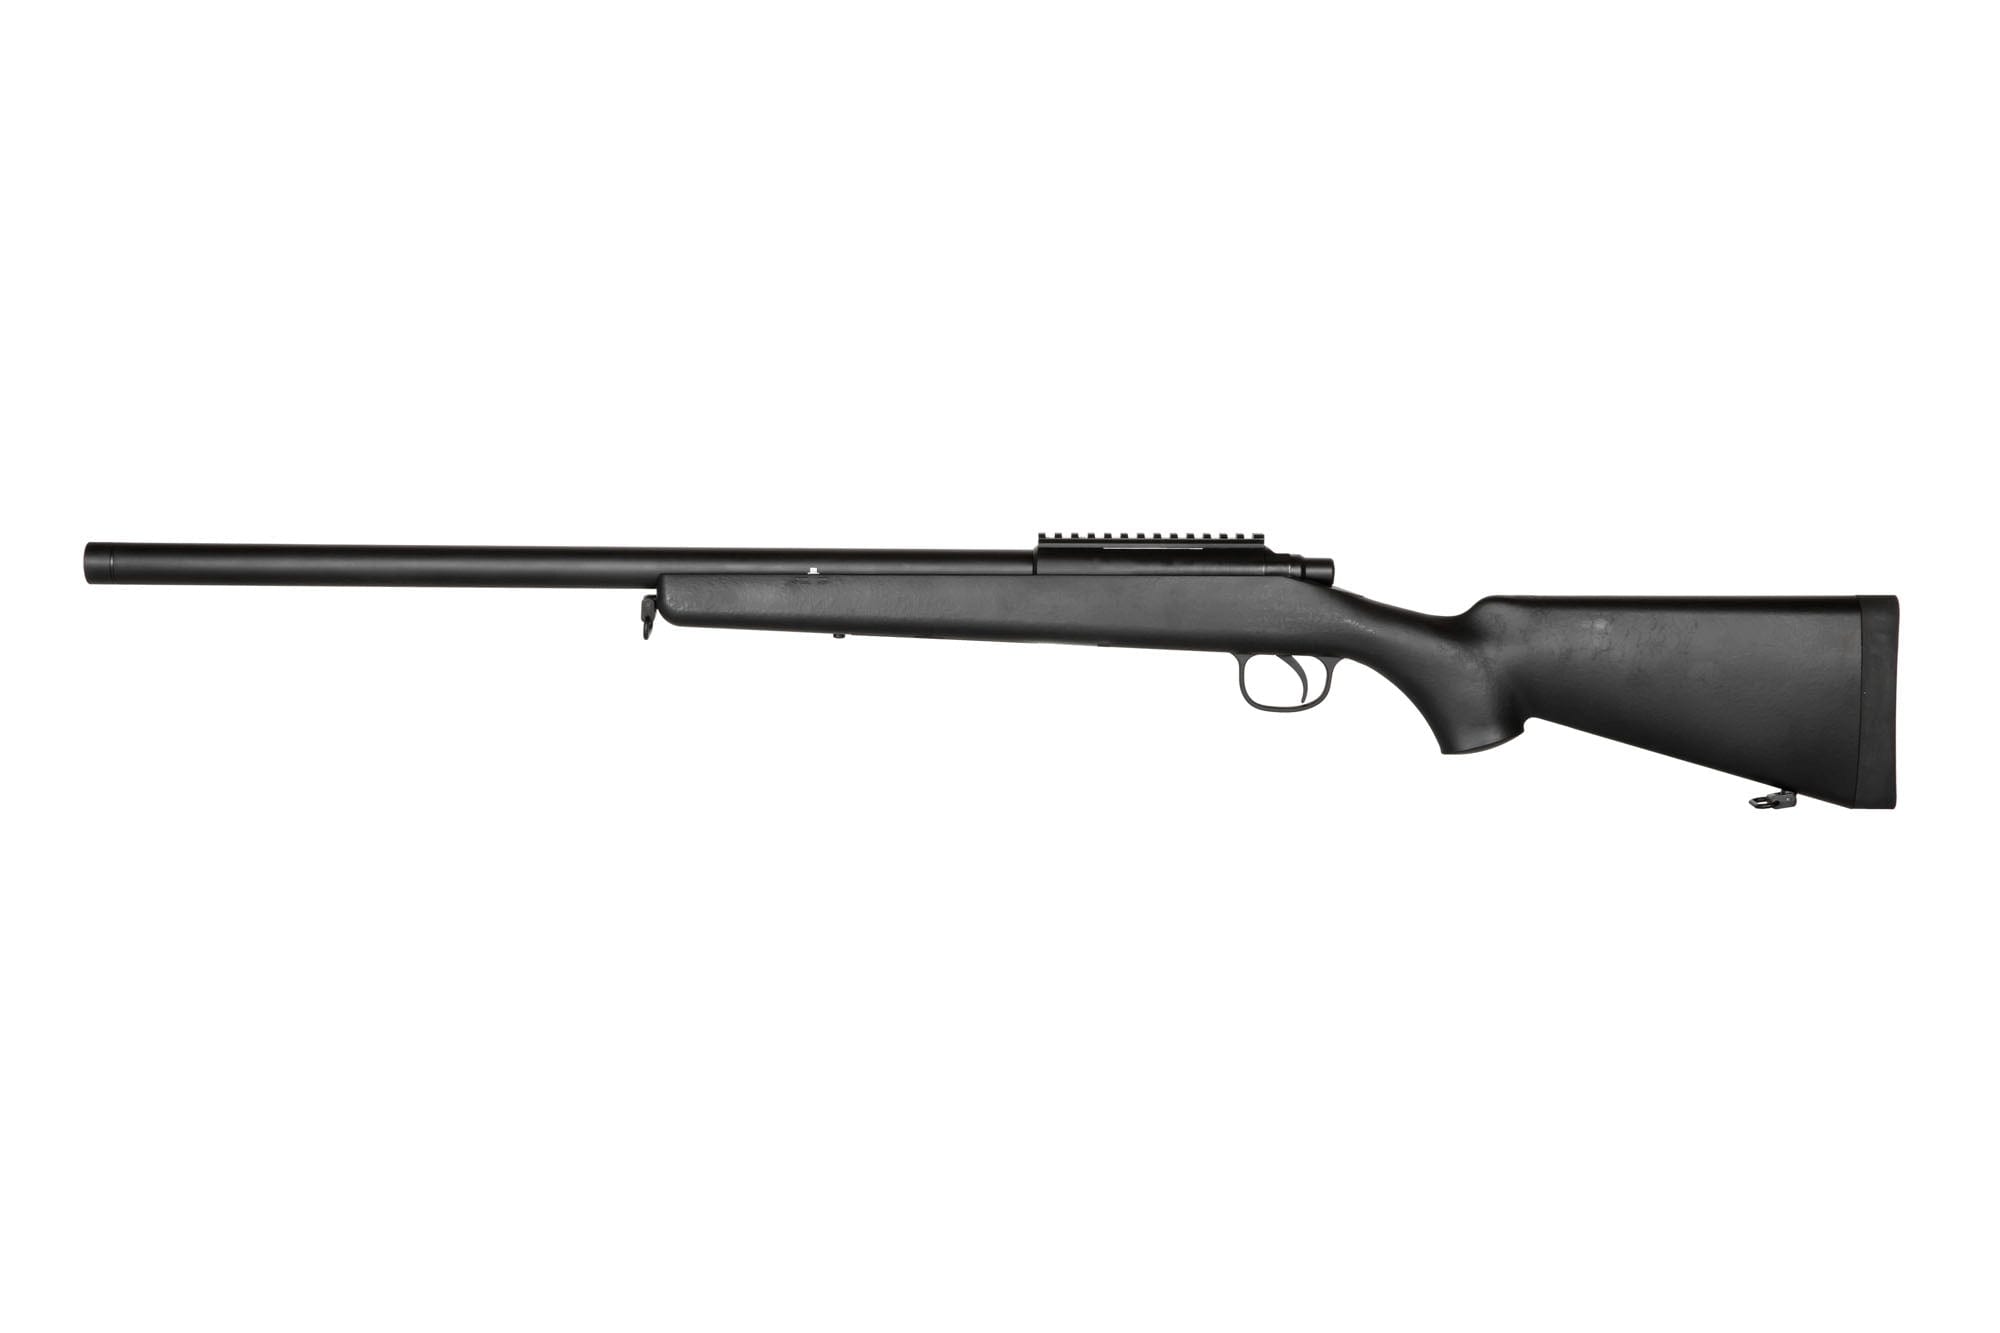 210 Sniper rifle replica - black